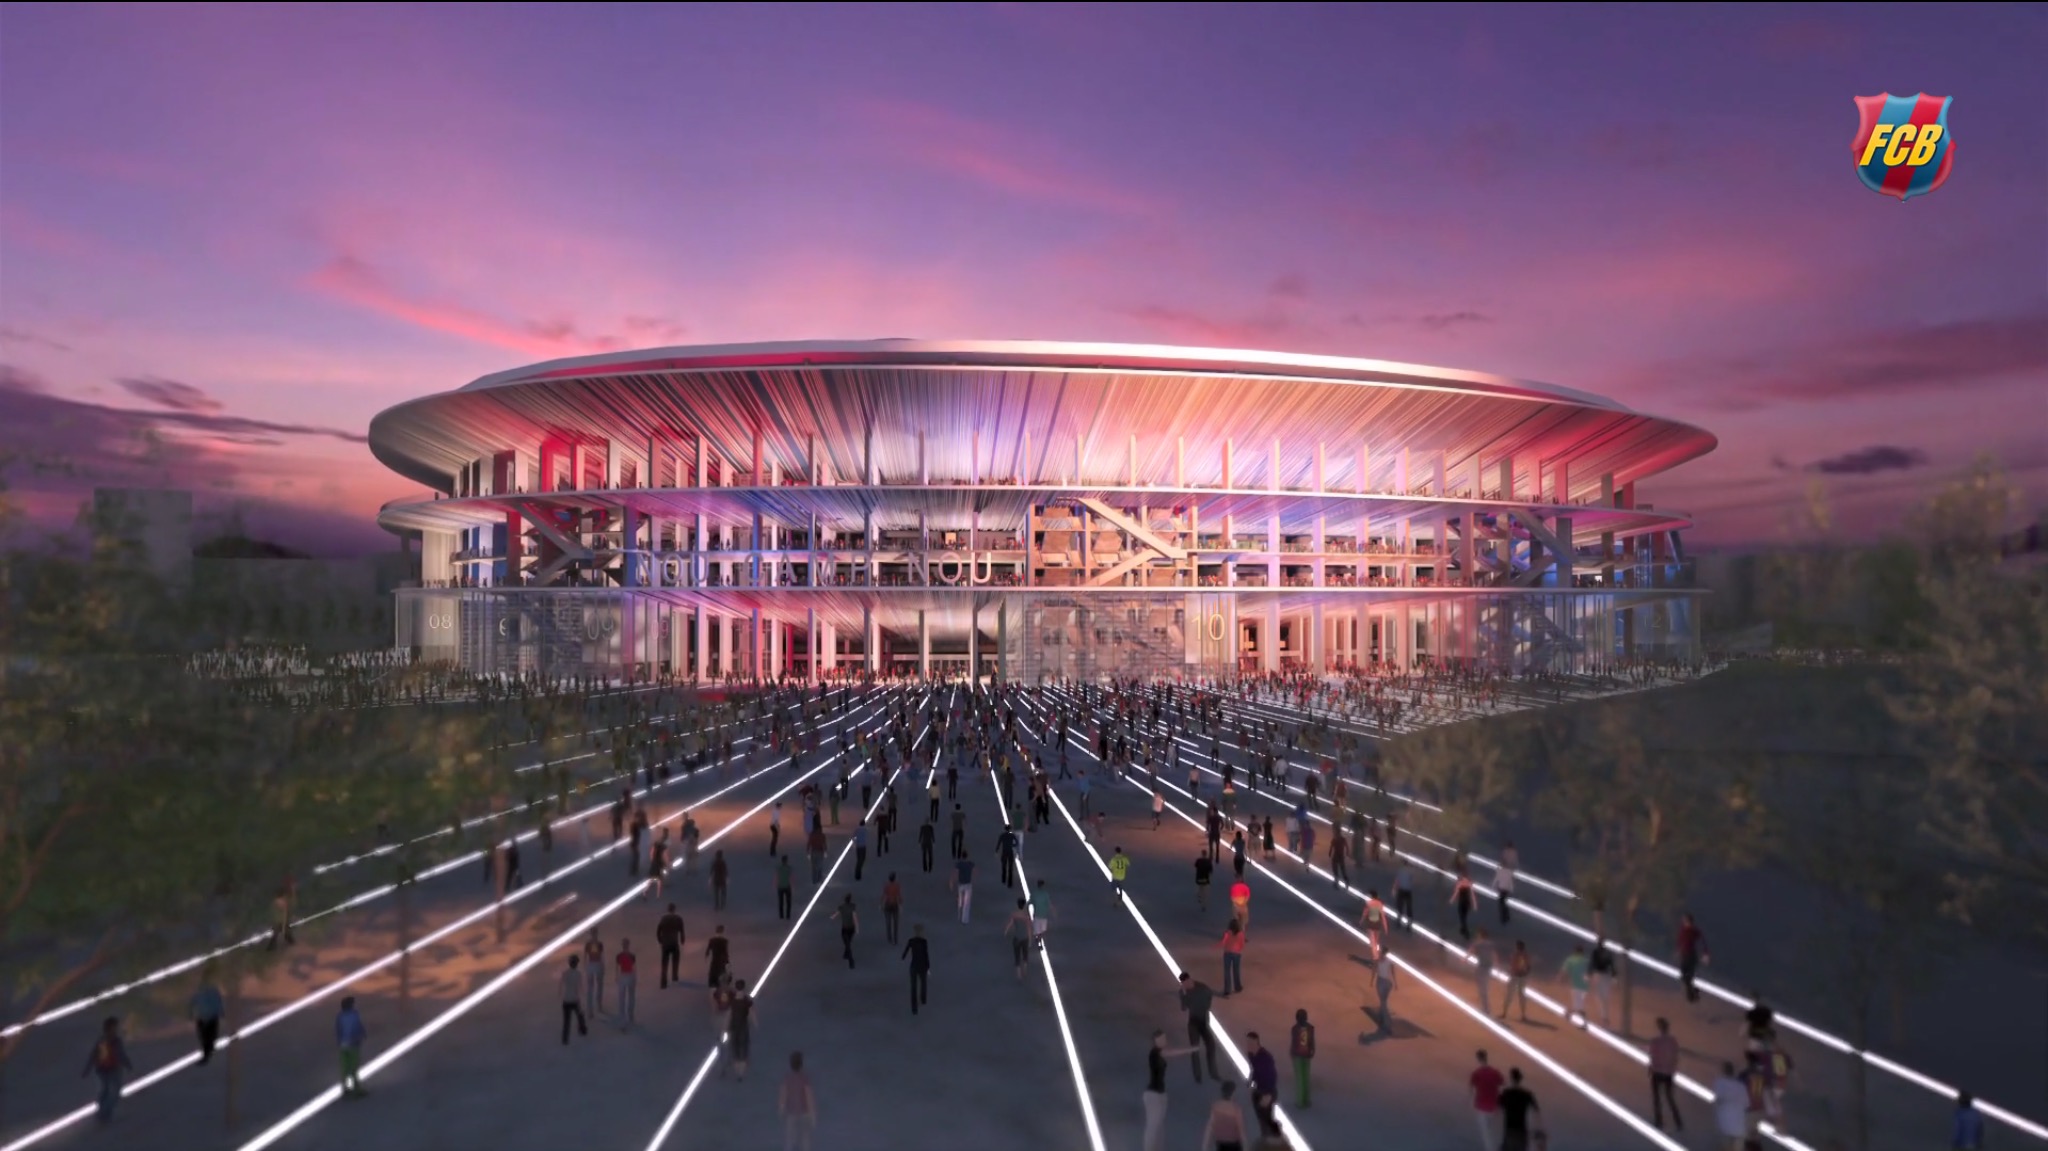 Camp Nou: Das Stadion in Barcelona wird das neue Highlight der Stadt